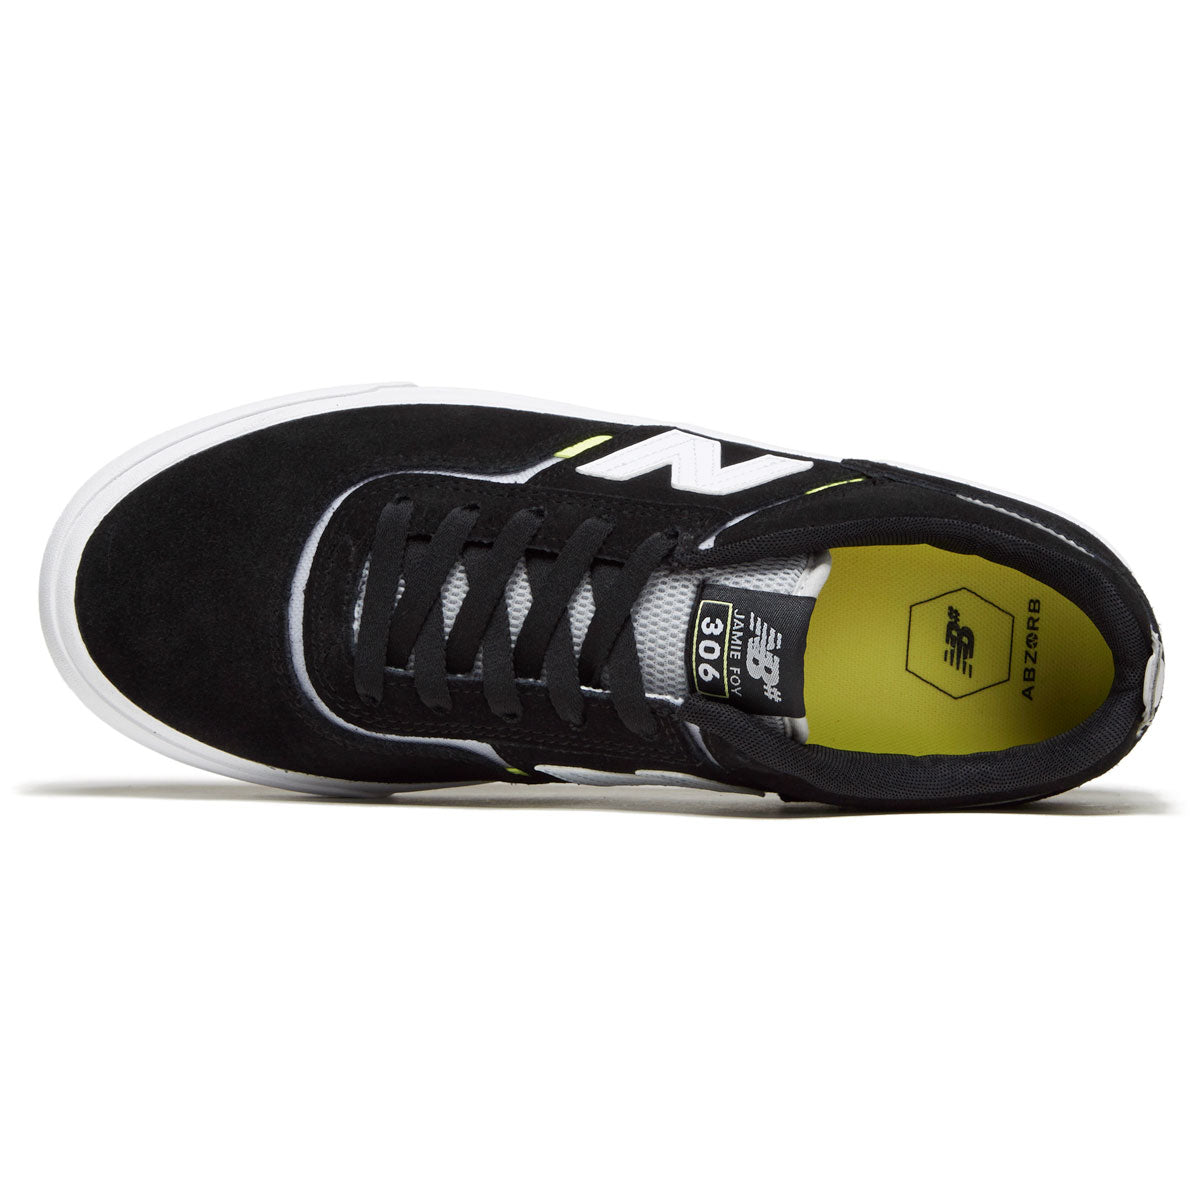 New Balance 306 Foy Shoes - Black/White image 3